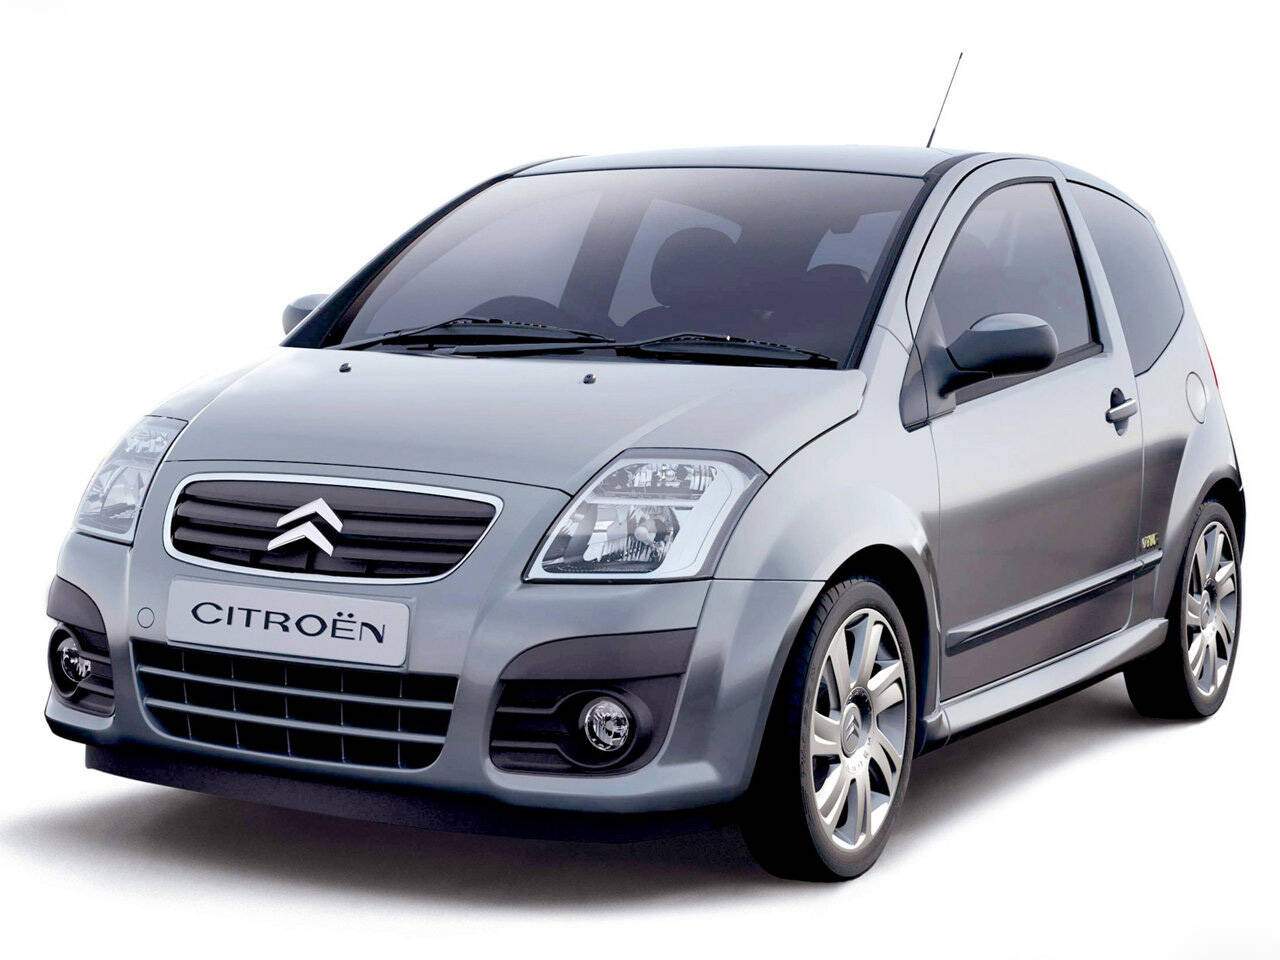 Citroën C2 1.6 HDi 110 (2008-2009),  ajouté par fox58